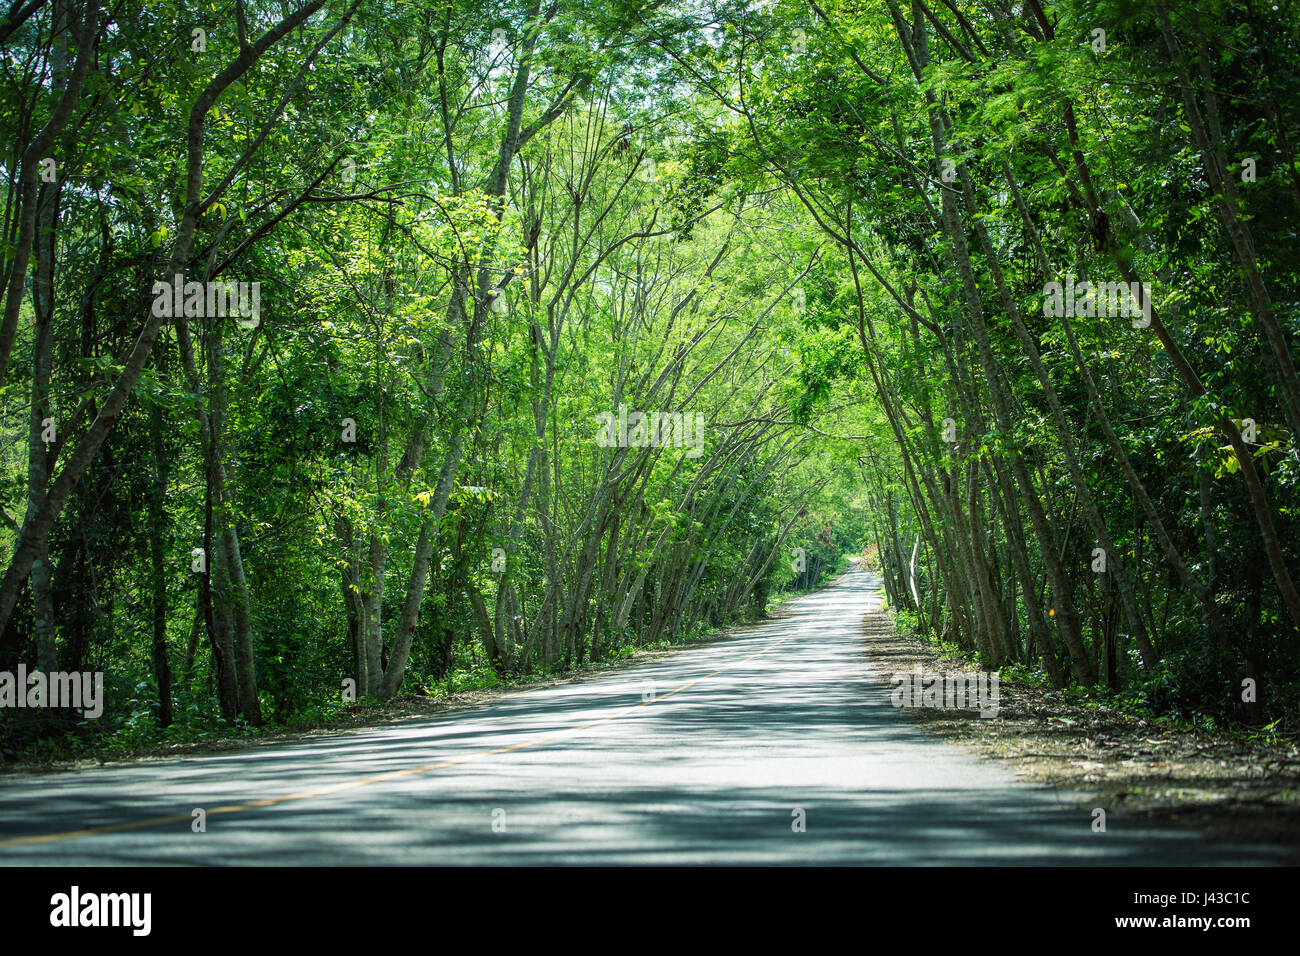 Ortsstraße in fallenden frischer grüner Baum in tropischen Wald Landschaft genannt Baum Tunnel. Sonnenlicht macht Schatten am Boden. Stockfoto